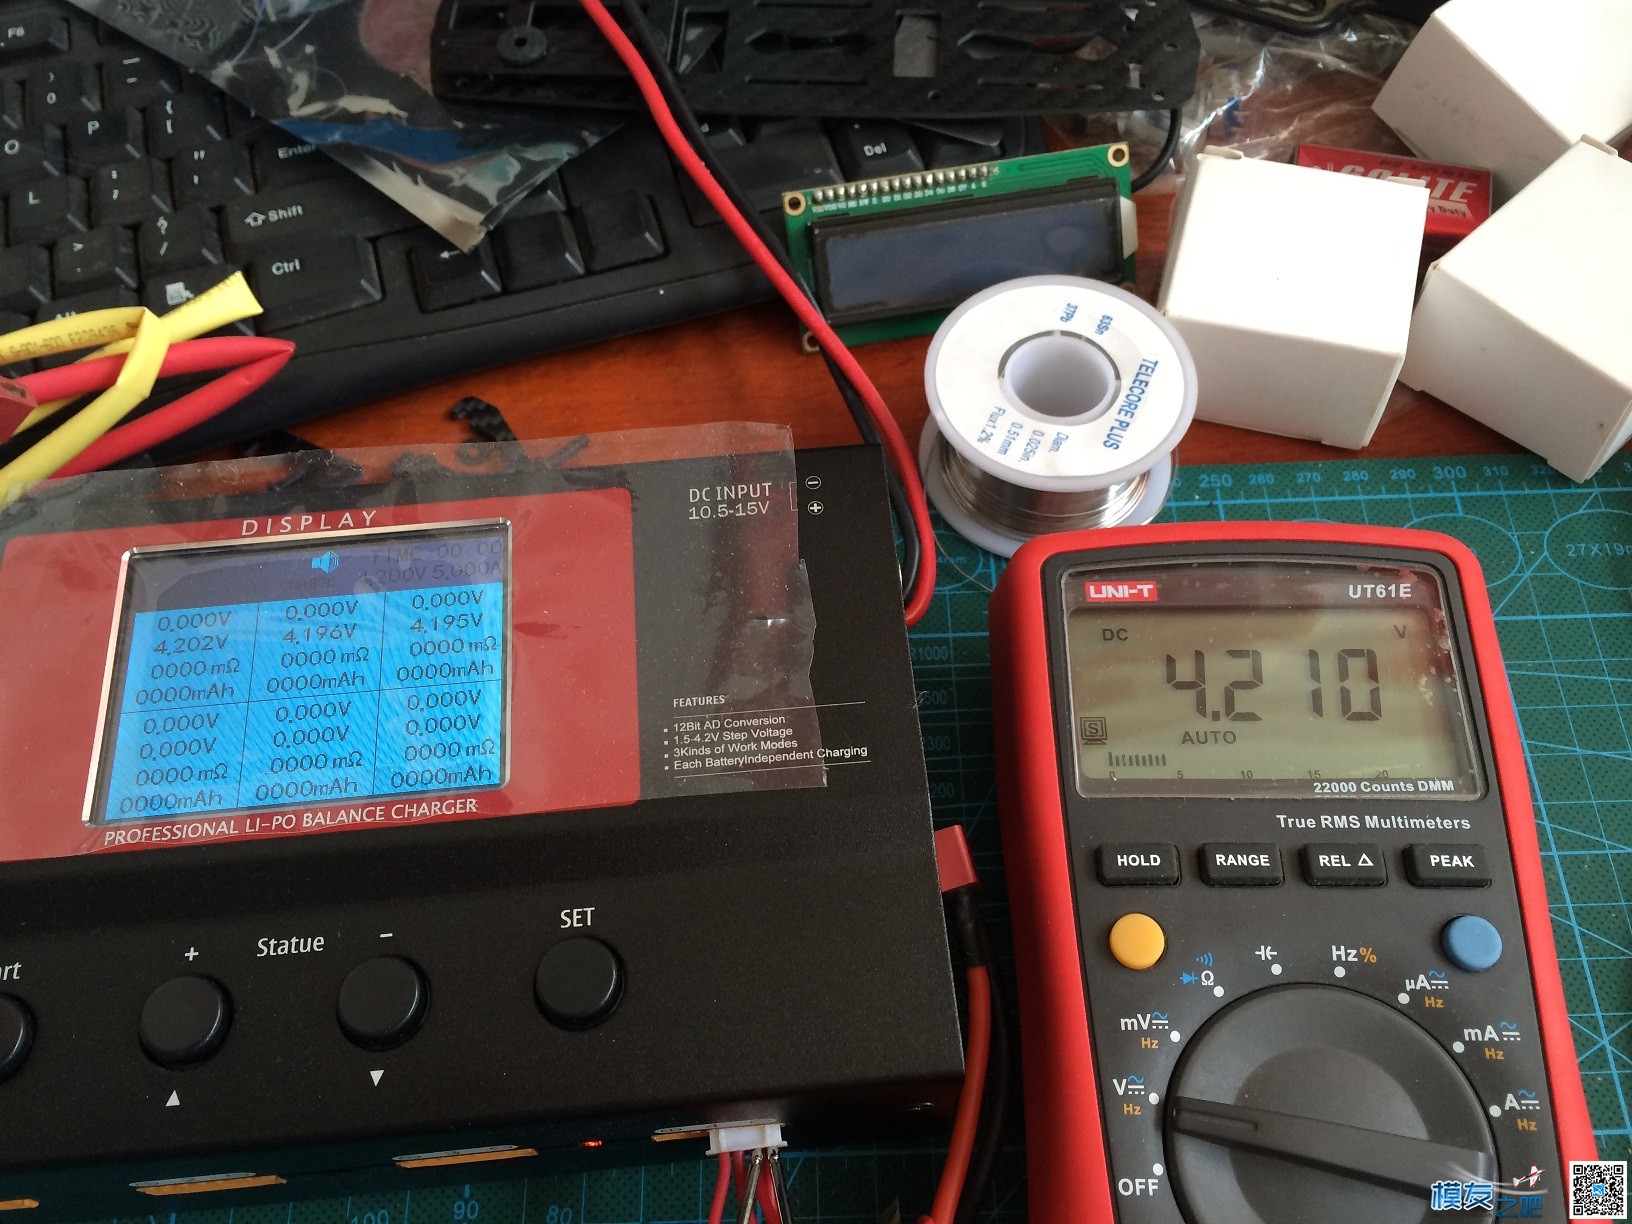 【MOZ8】乐迪CB86完全拆解对比测评 电池,充电器,开源,乐迪,固件 作者:一点痕迹 3591 